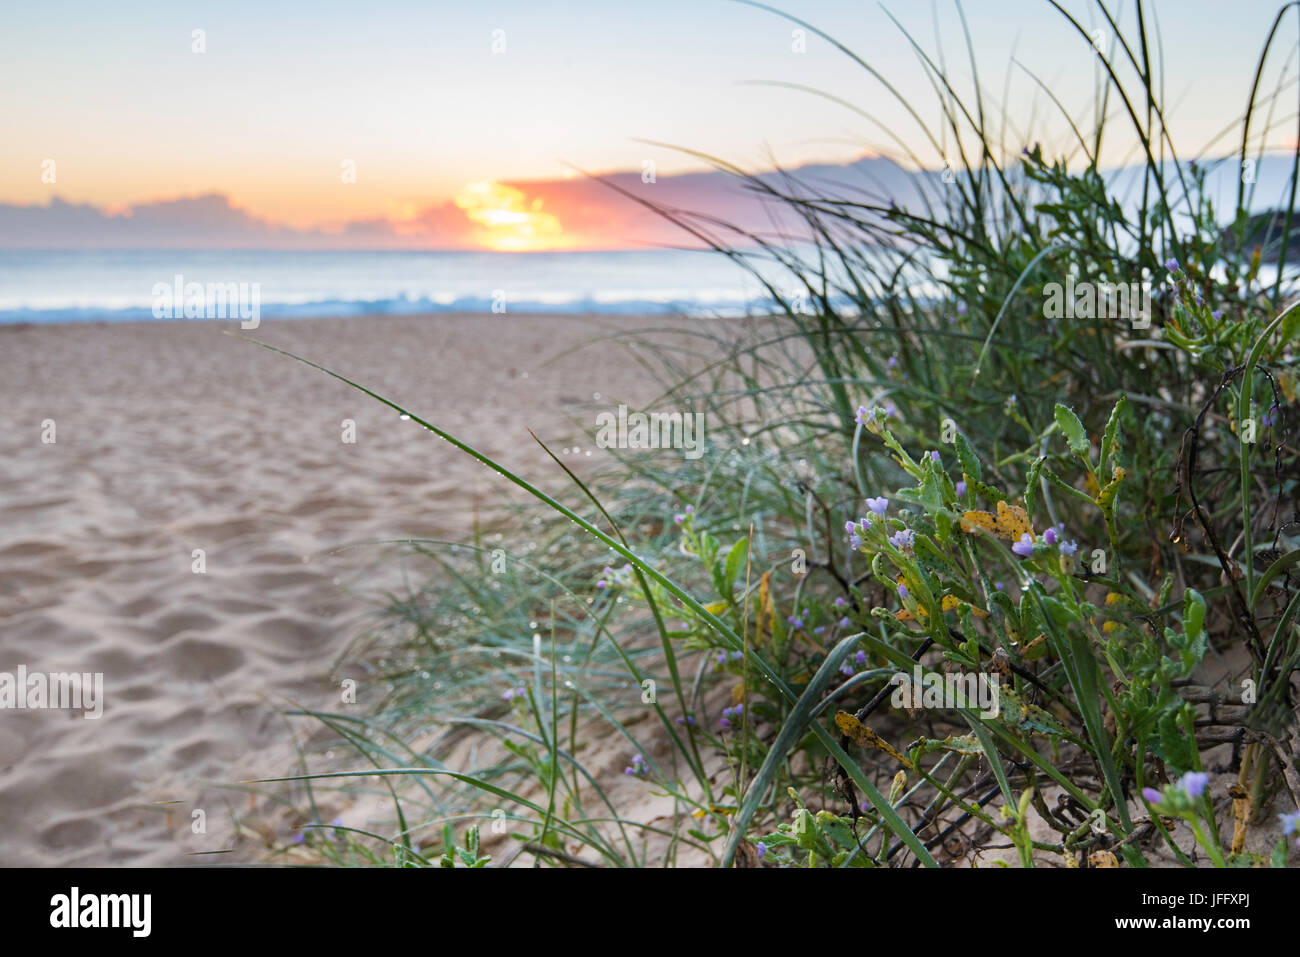 Einheimische australische Pflanzen wachsen auf einer Sanddüne neben einem Einstiegspfad zum Black Head Beach an der mittleren Nordküste von New South Wales, Australien Stockfoto